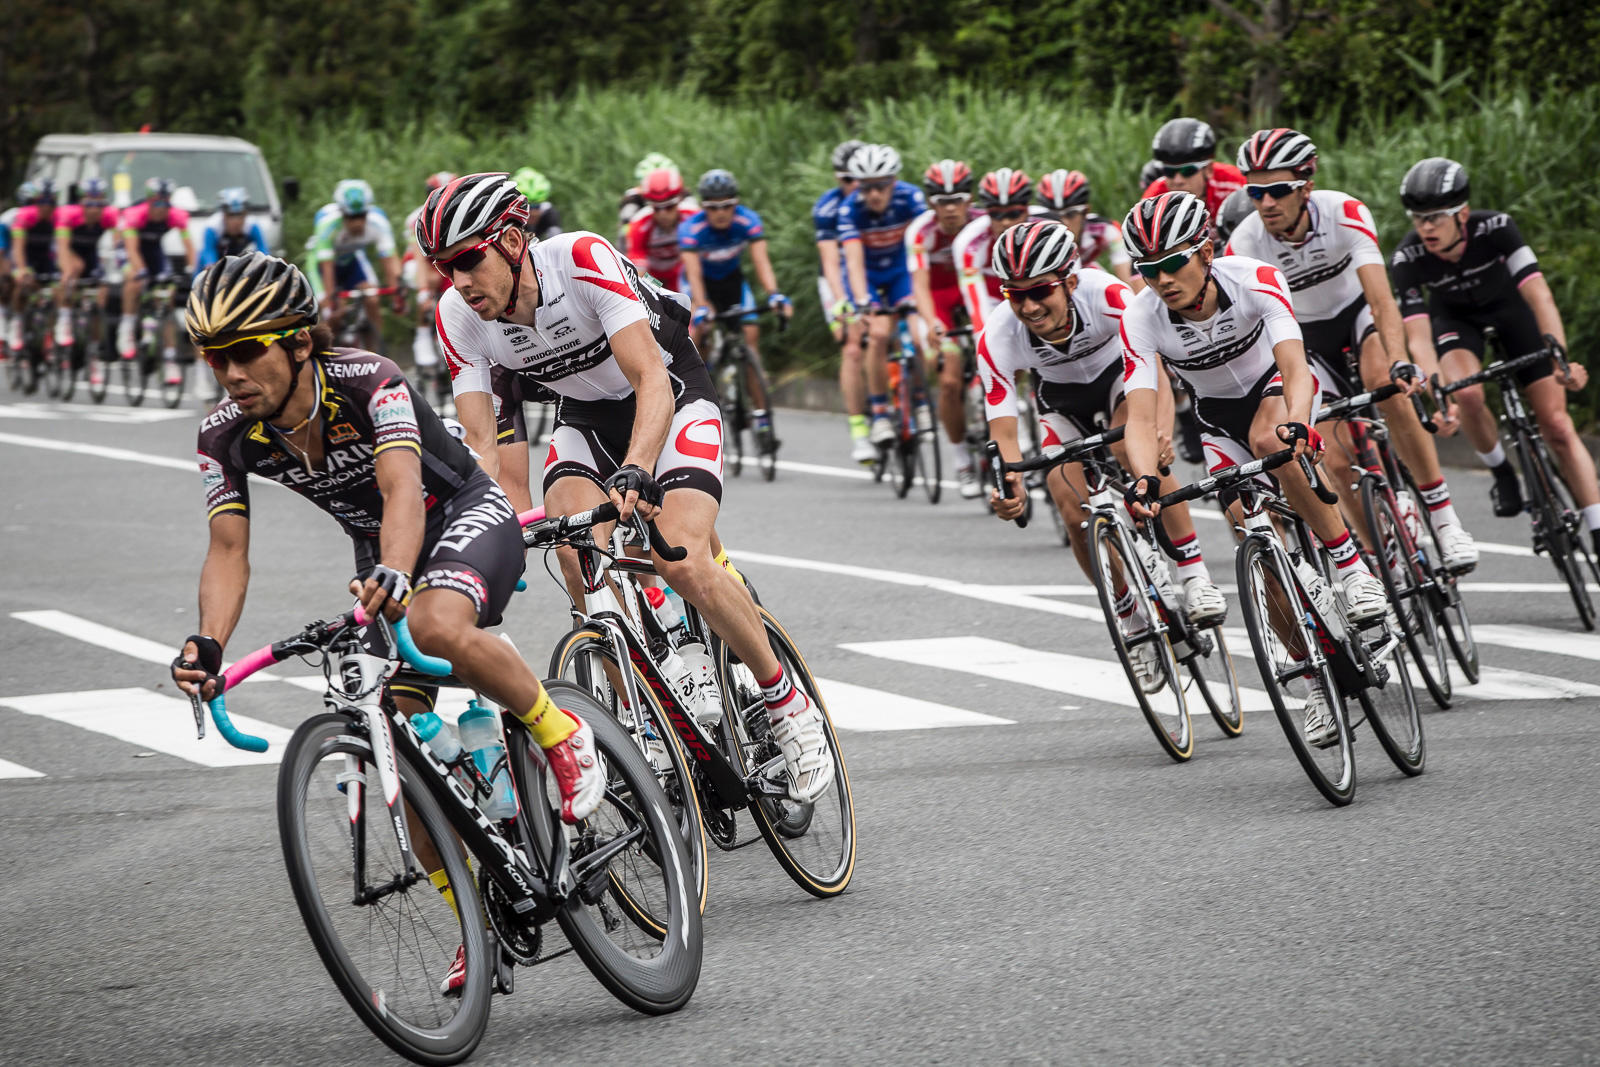 2012〜2017年 <br>《ブリヂストン アンカー サイクリングチーム》<br>BRIDGESTONE Anchor Cycling Team<br><br> コンチネンタルチームとして世界ロードシーンの一員、外国籍選手の再加入と日本主要ロードレースの常勝チームに